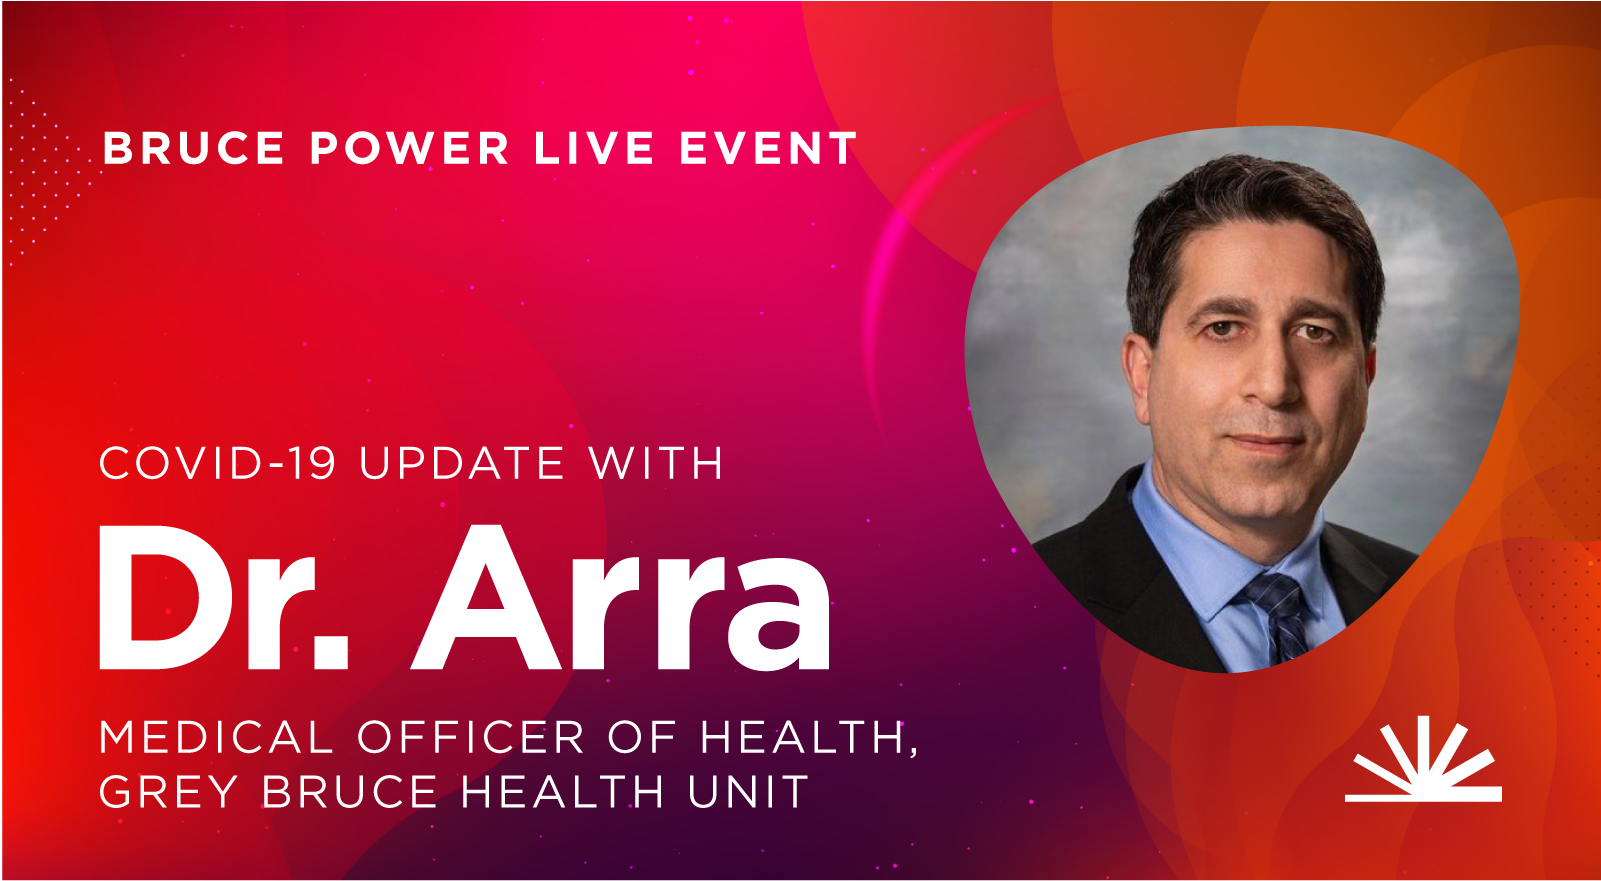 Live event Dr. Arra advertisement